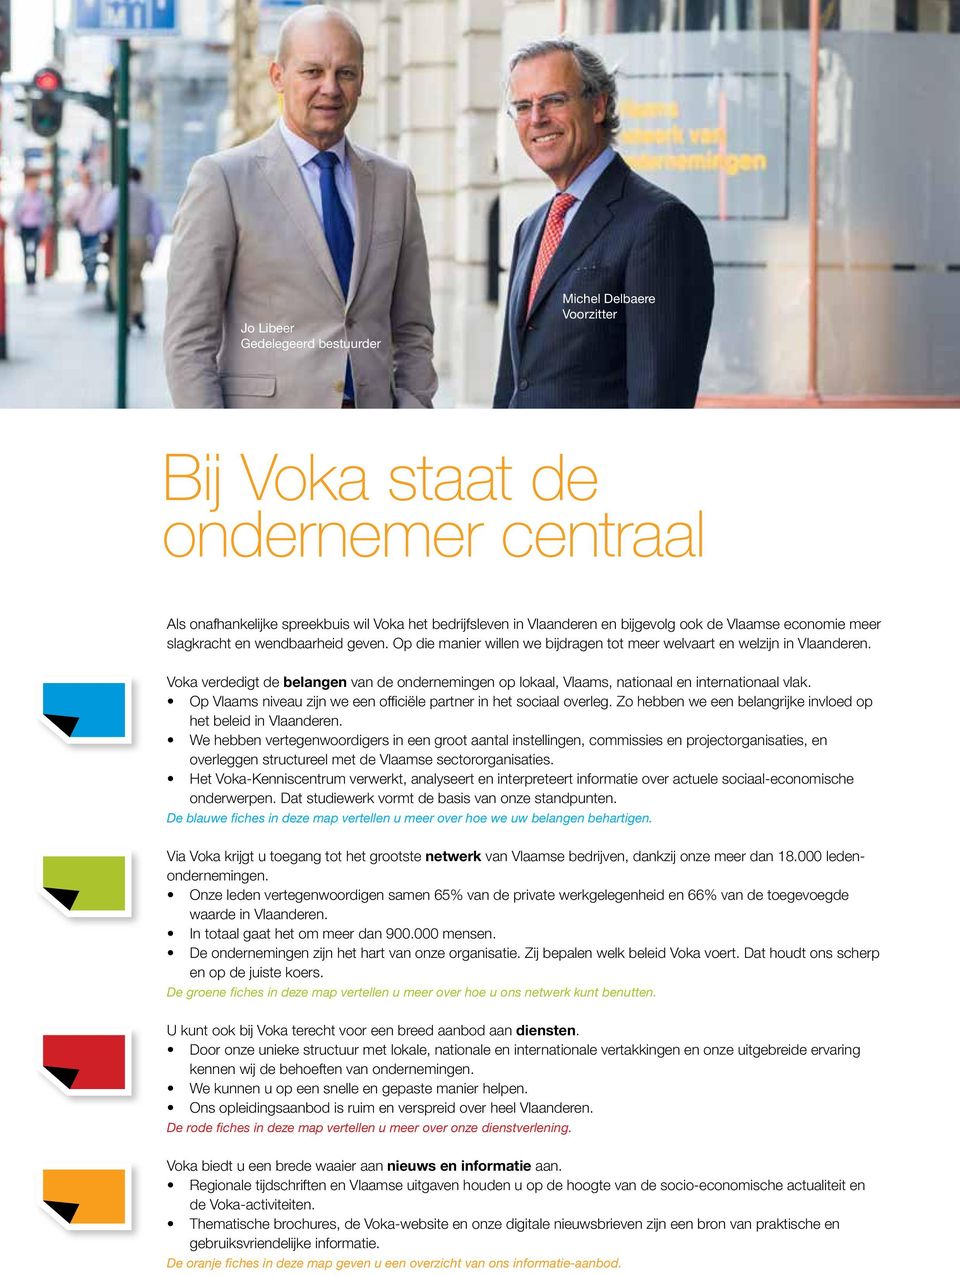 Voka verdedigt de belangen van de ondernemingen op lokaal, Vlaams, nationaal en internationaal vlak. Op Vlaams niveau zijn we een officiële partner in het sociaal overleg.